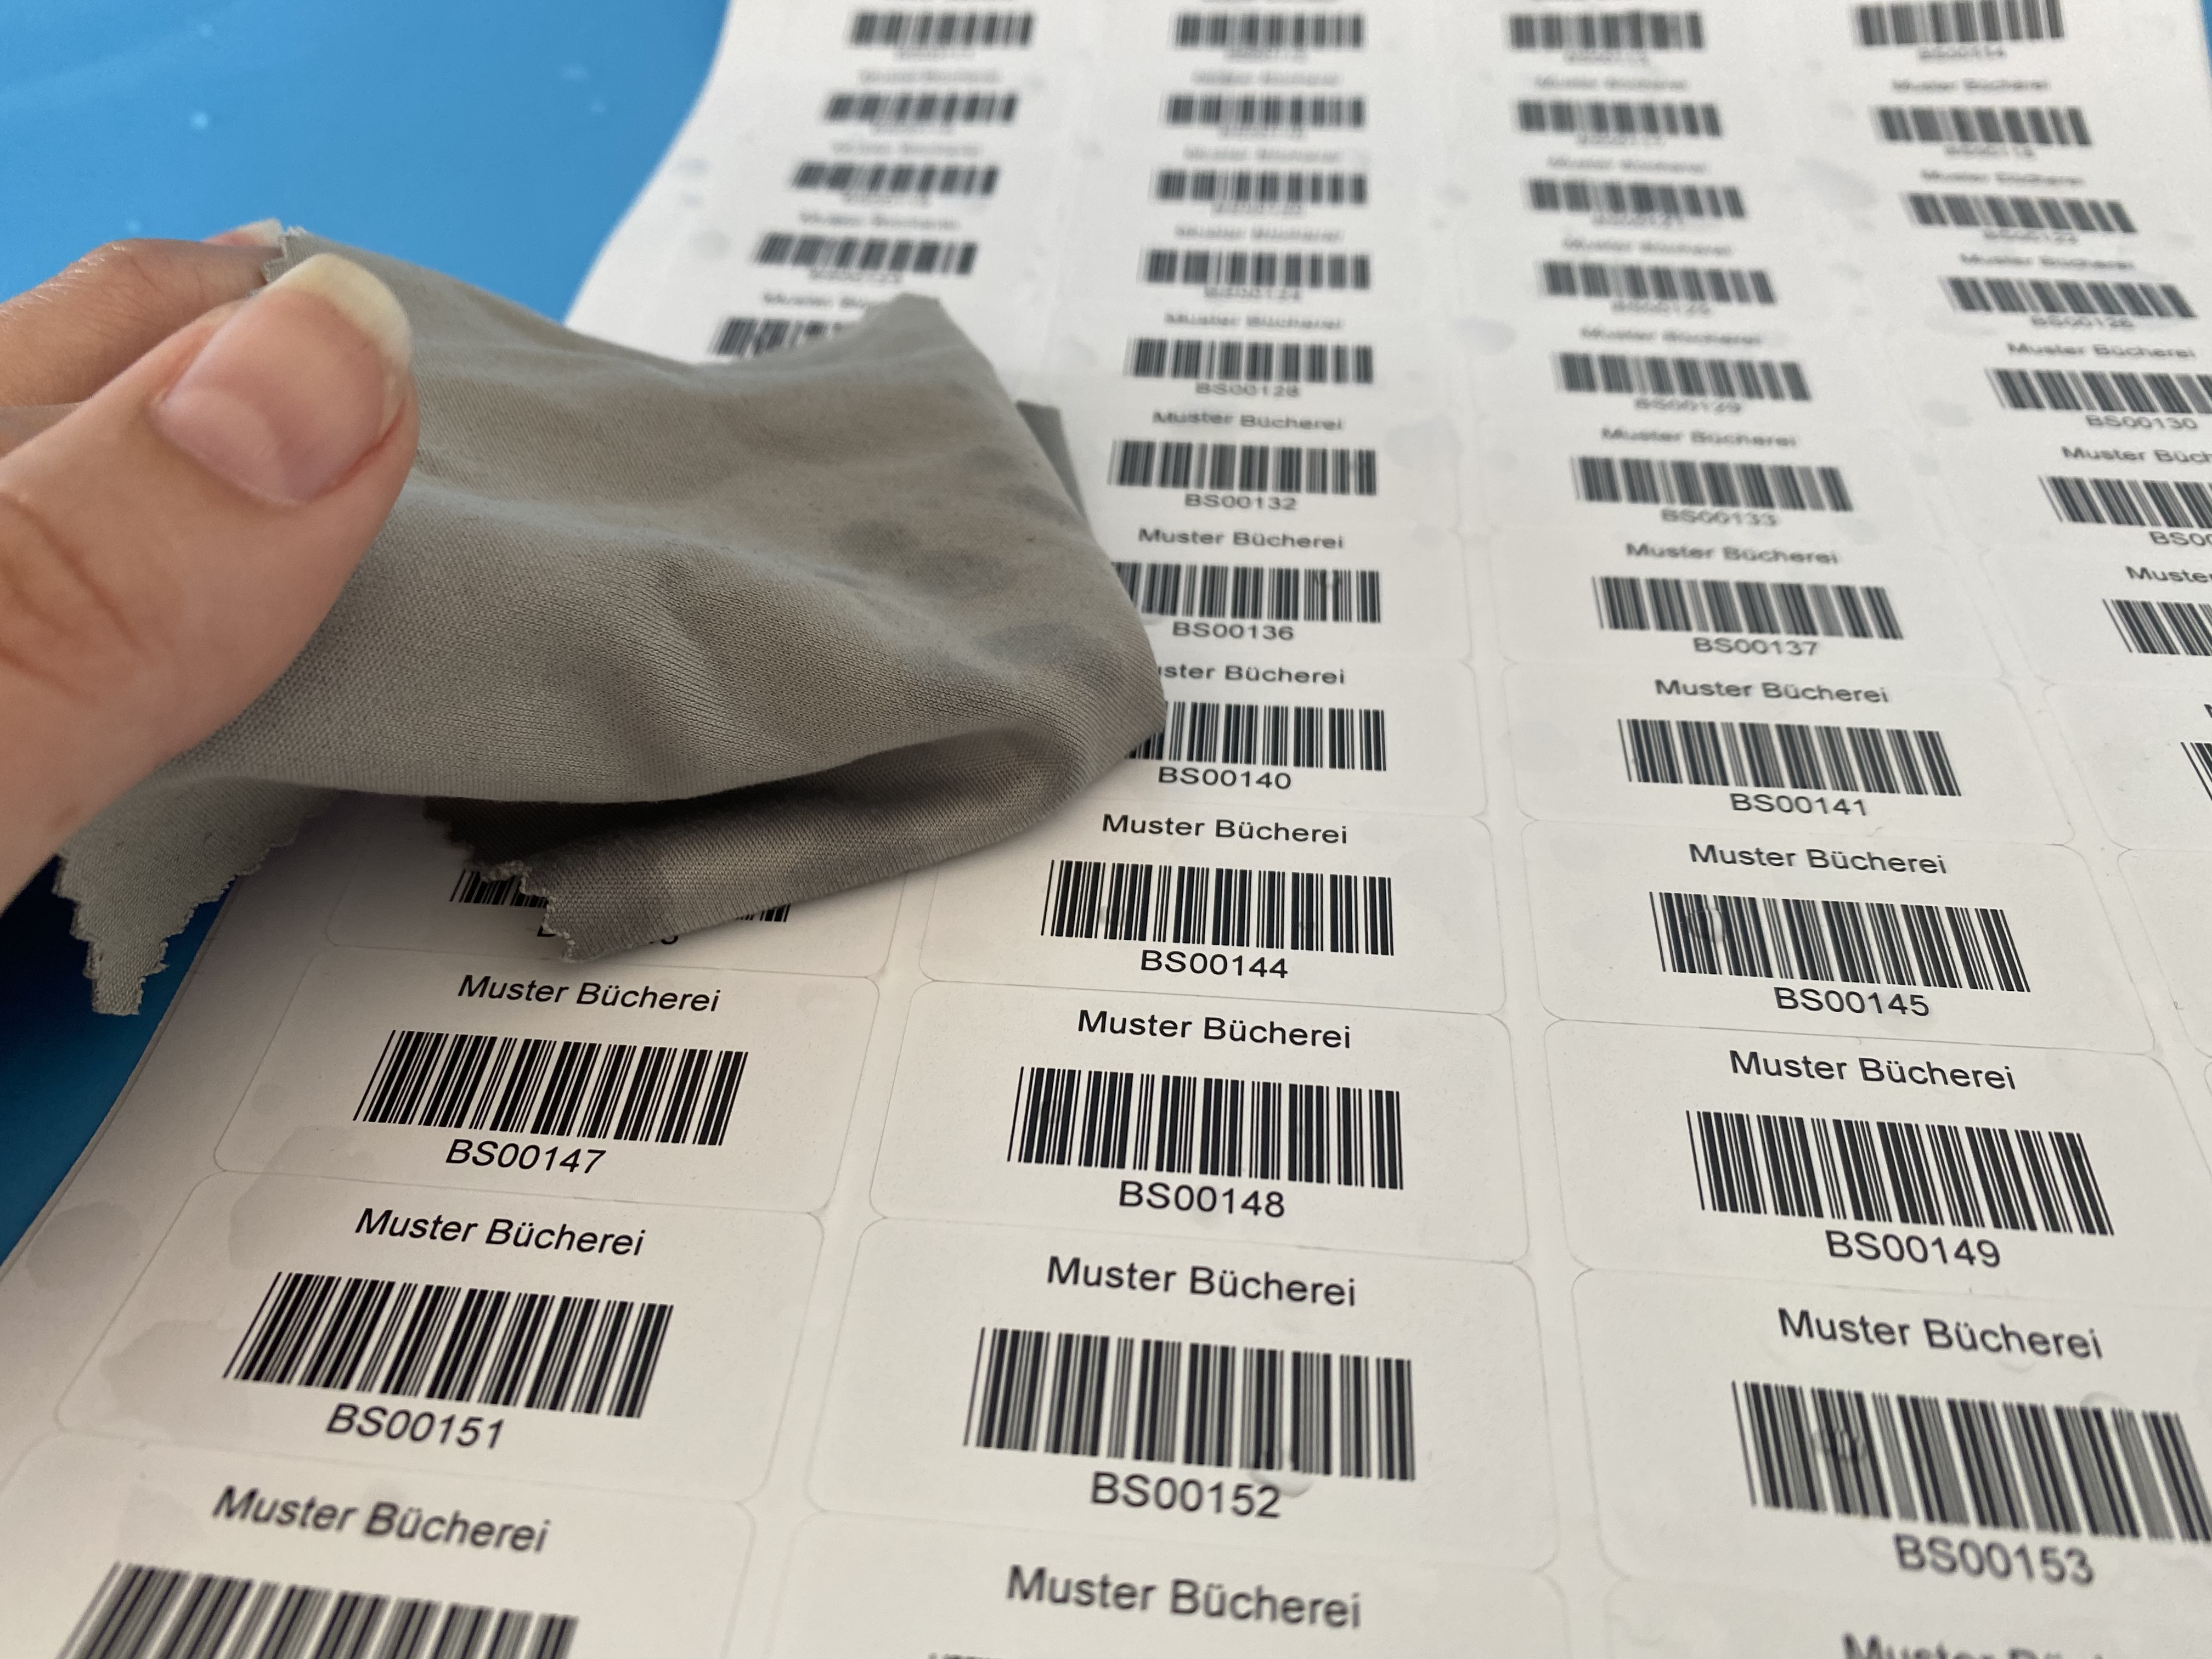 wischfeste, individuell bedruckte Barcode-Etiketten auf Bögen